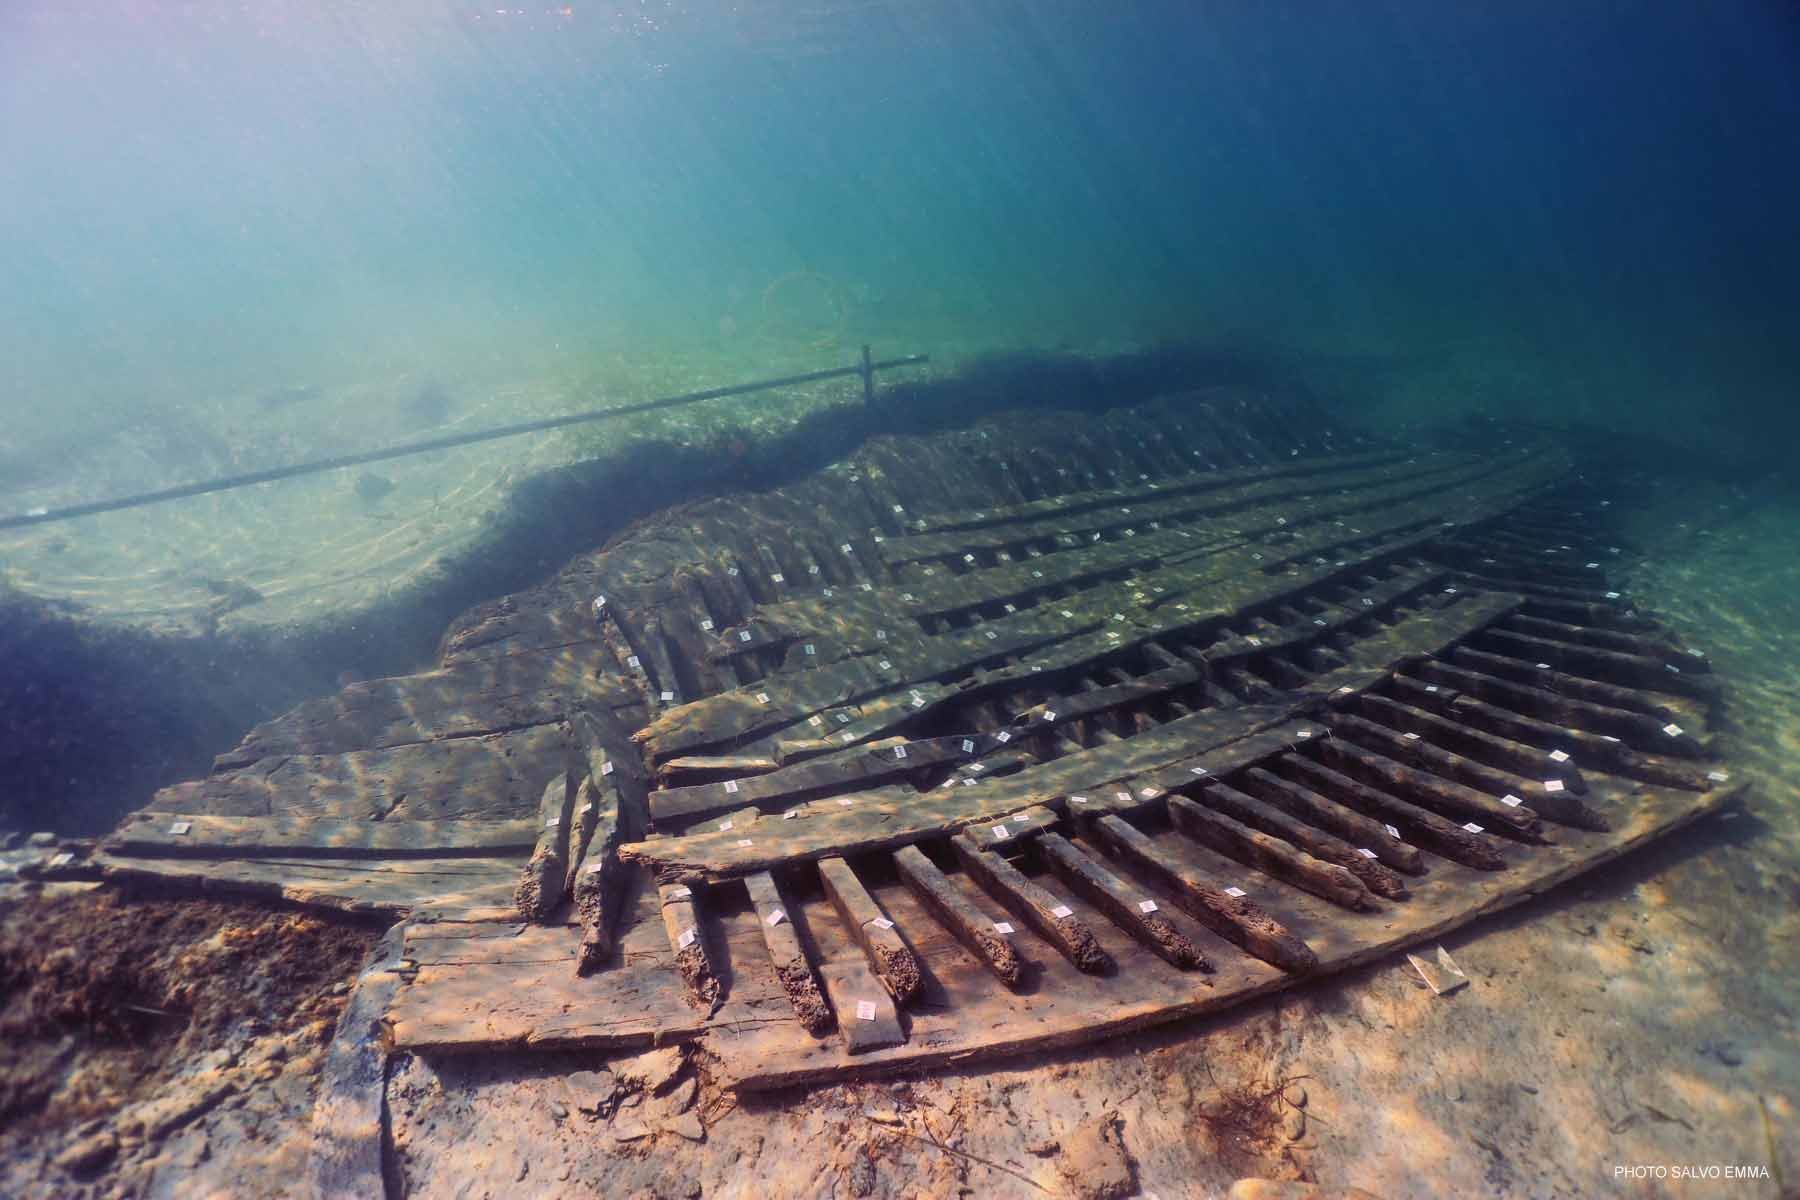 Los restos del barco se encontraron a unos cien metros de la costa de la localidad de Marausa, cerca de la ciudad de Trapani, a solo dos metros de profundidad. Foto: EFE